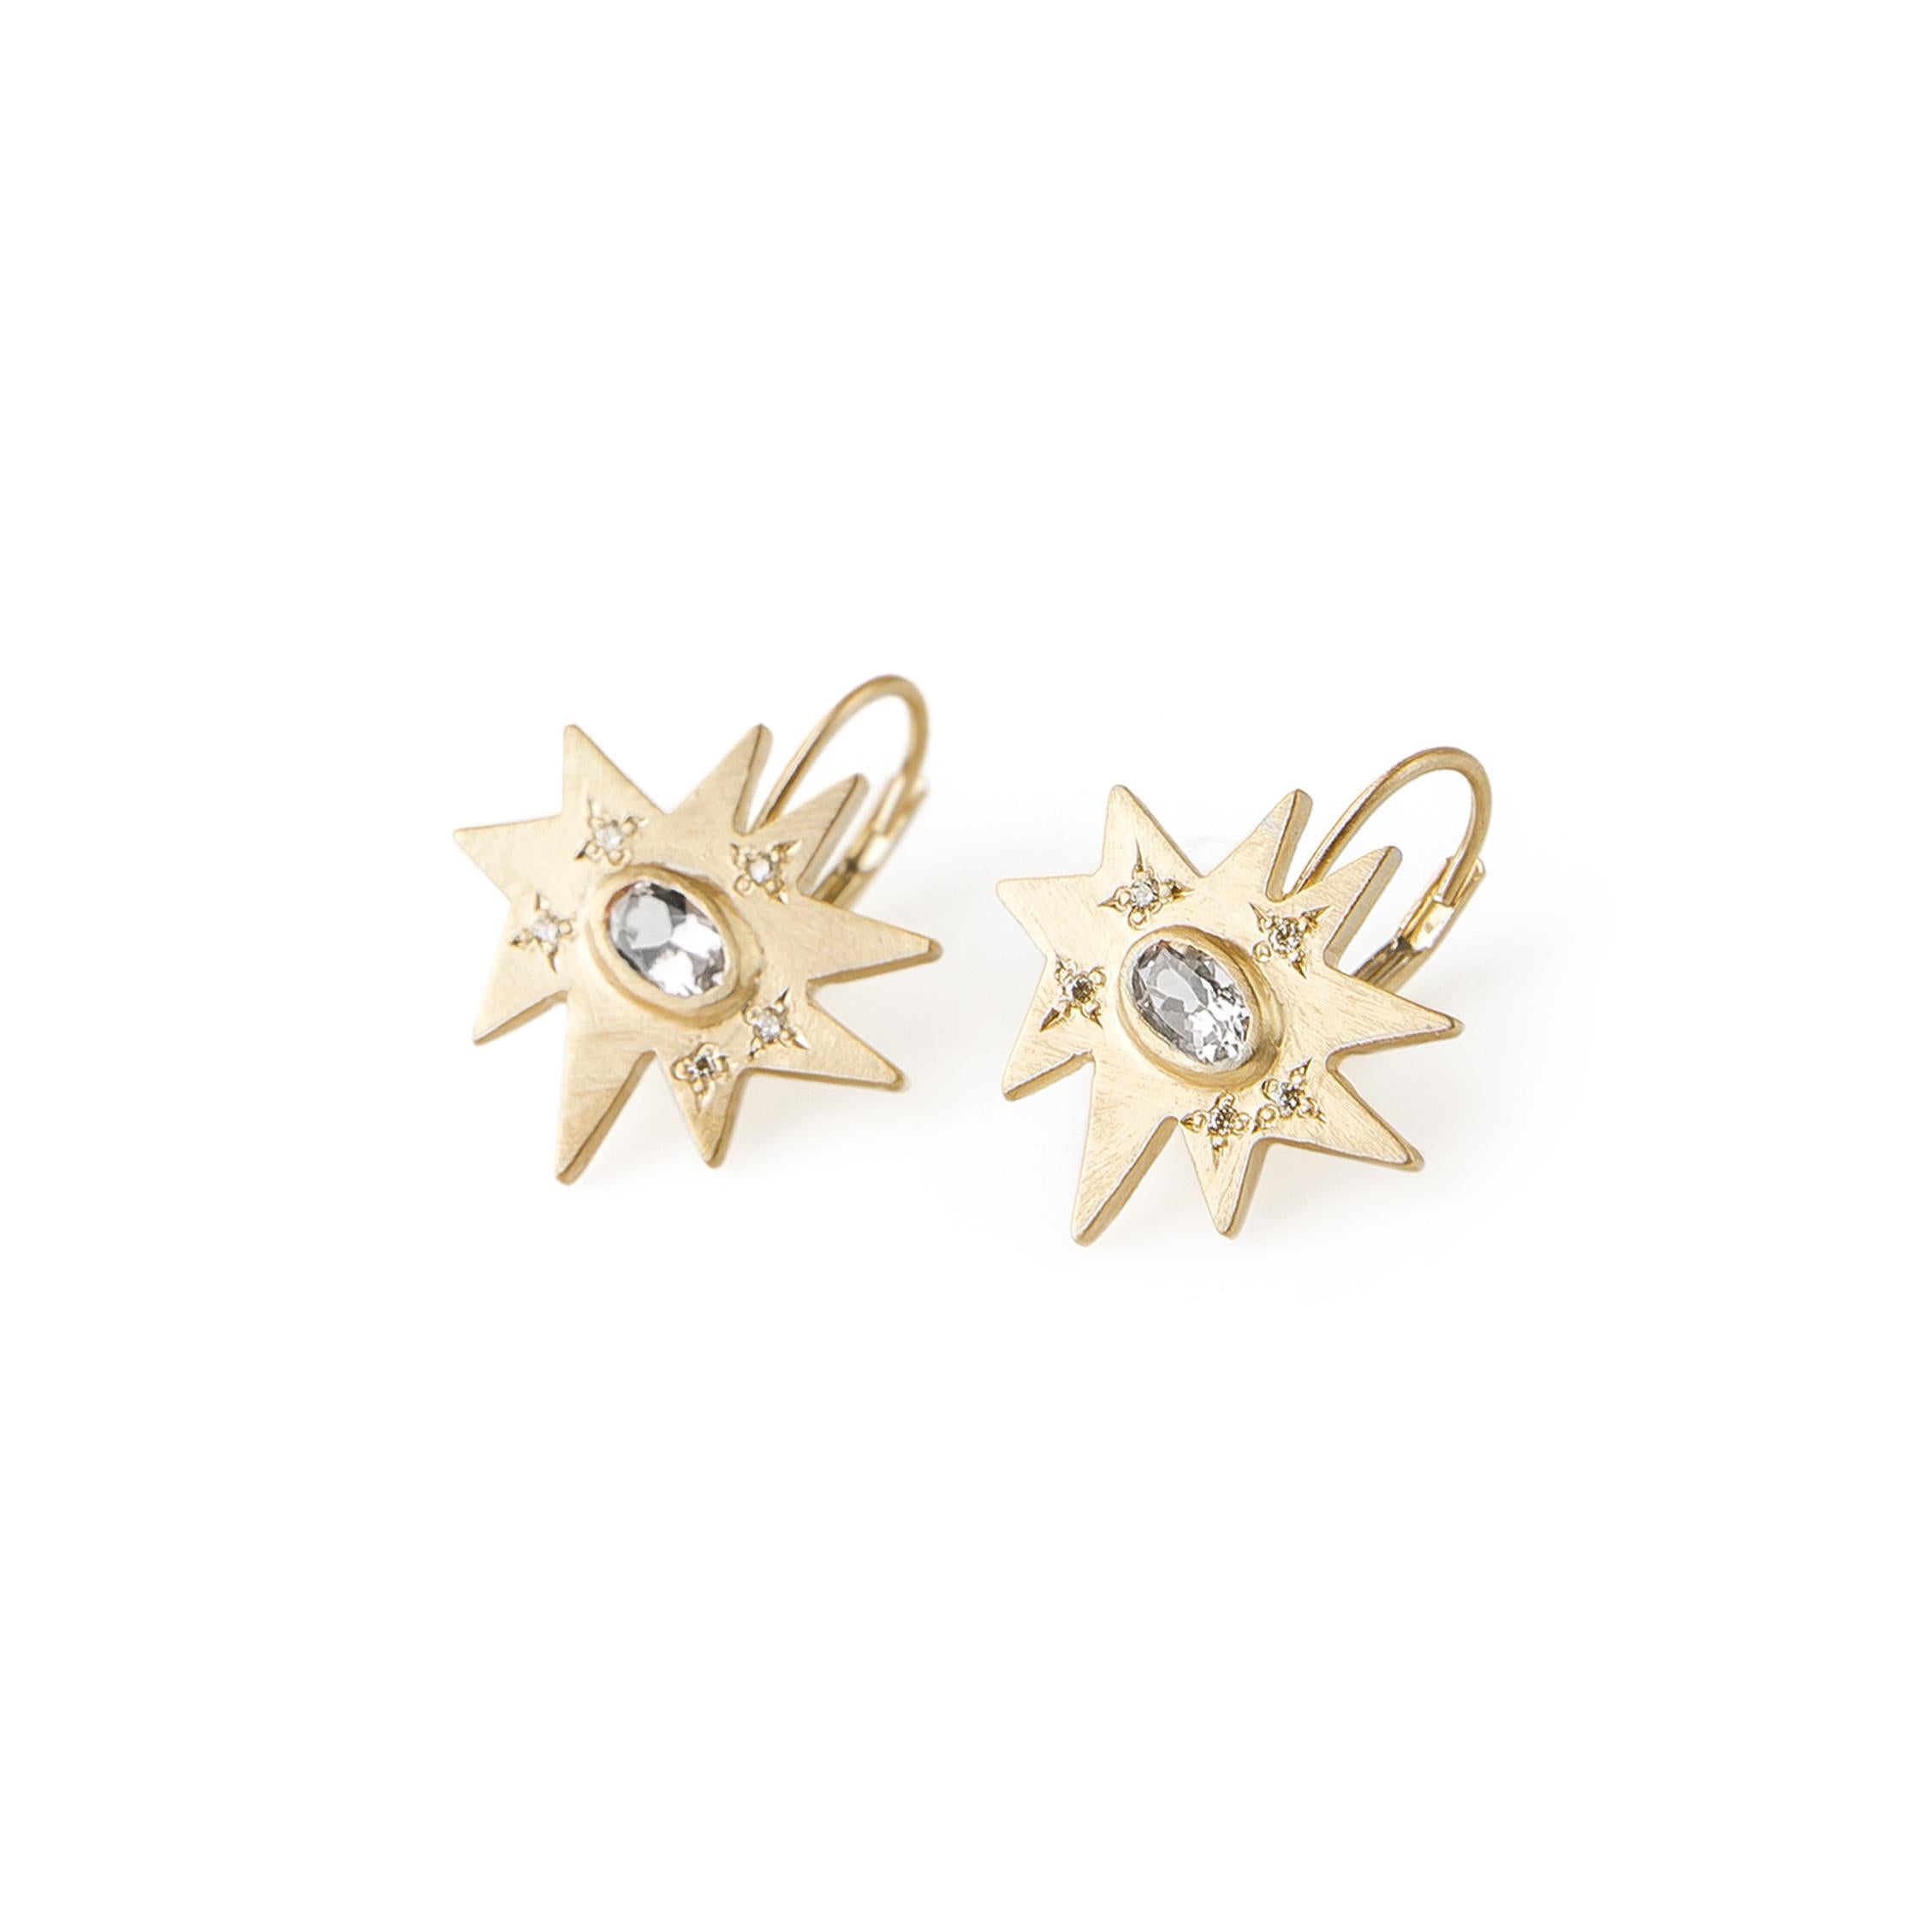 Emily Kuvin, boucles d'oreilles organiques en or et diamants demi-carats sur fils français fixes